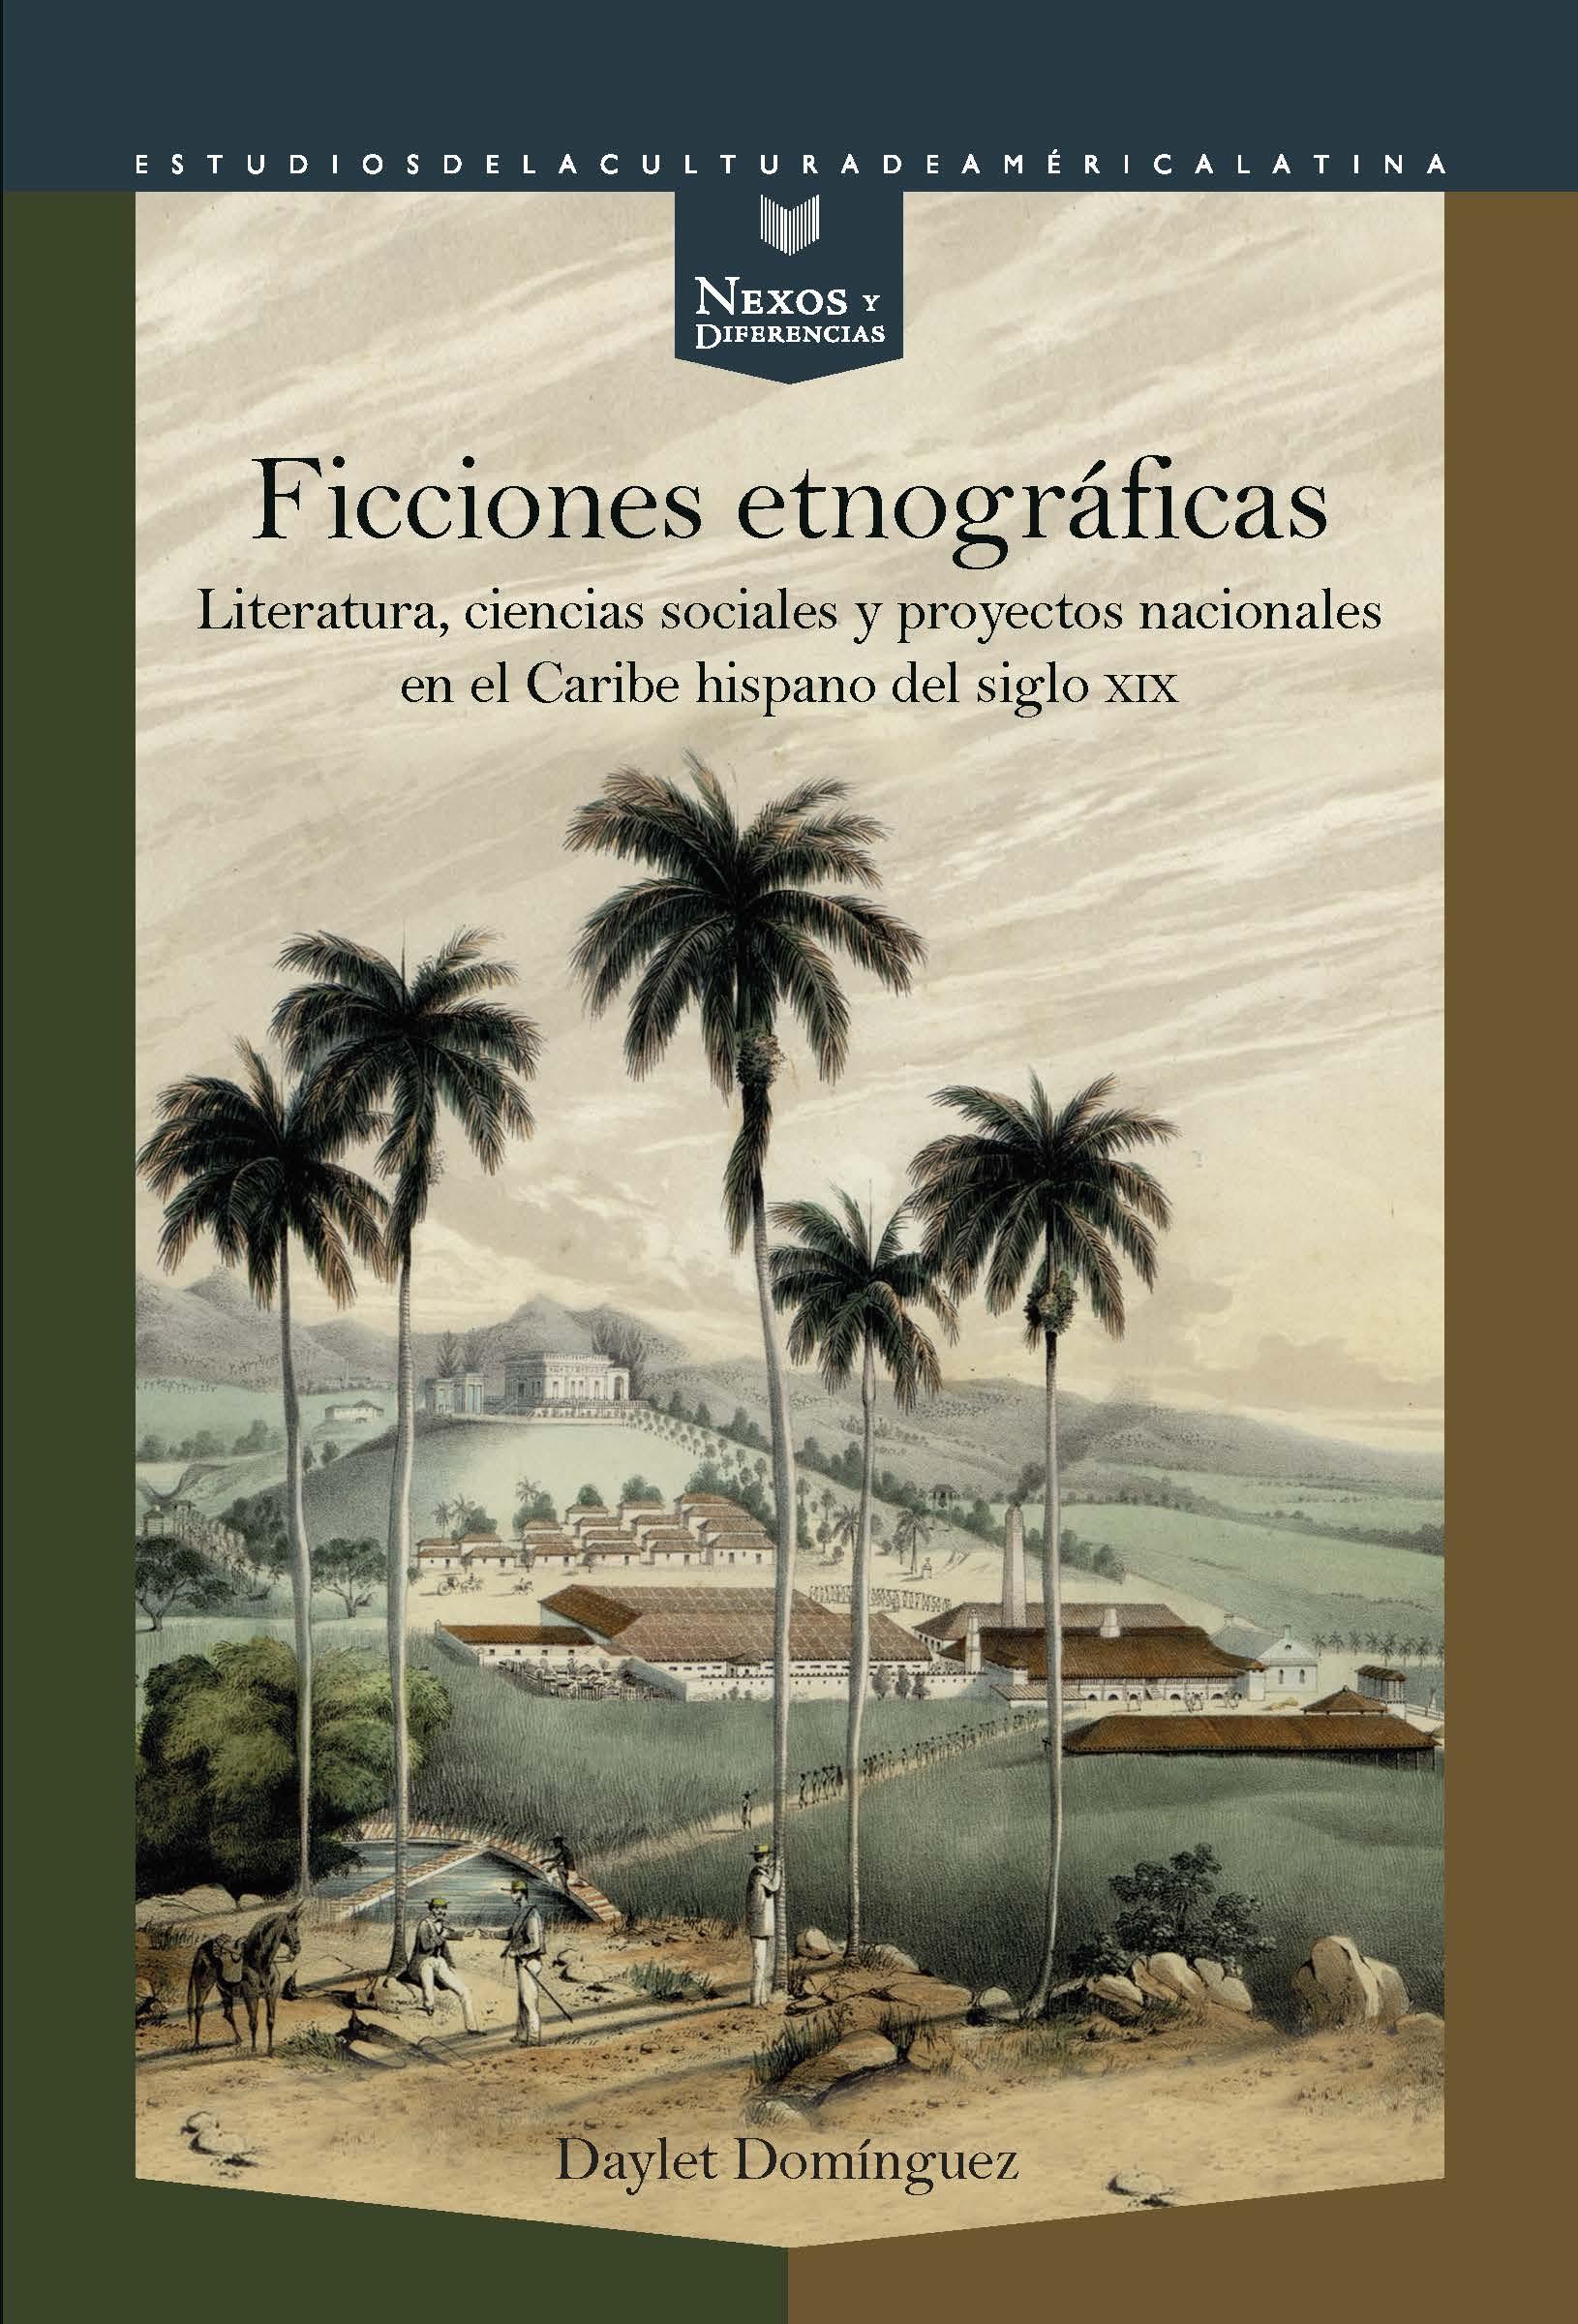 FICCIONES ETNOGRÁFICAS "literatura, ciencias sociales y proyectos nacionales en el Caribe hispan"